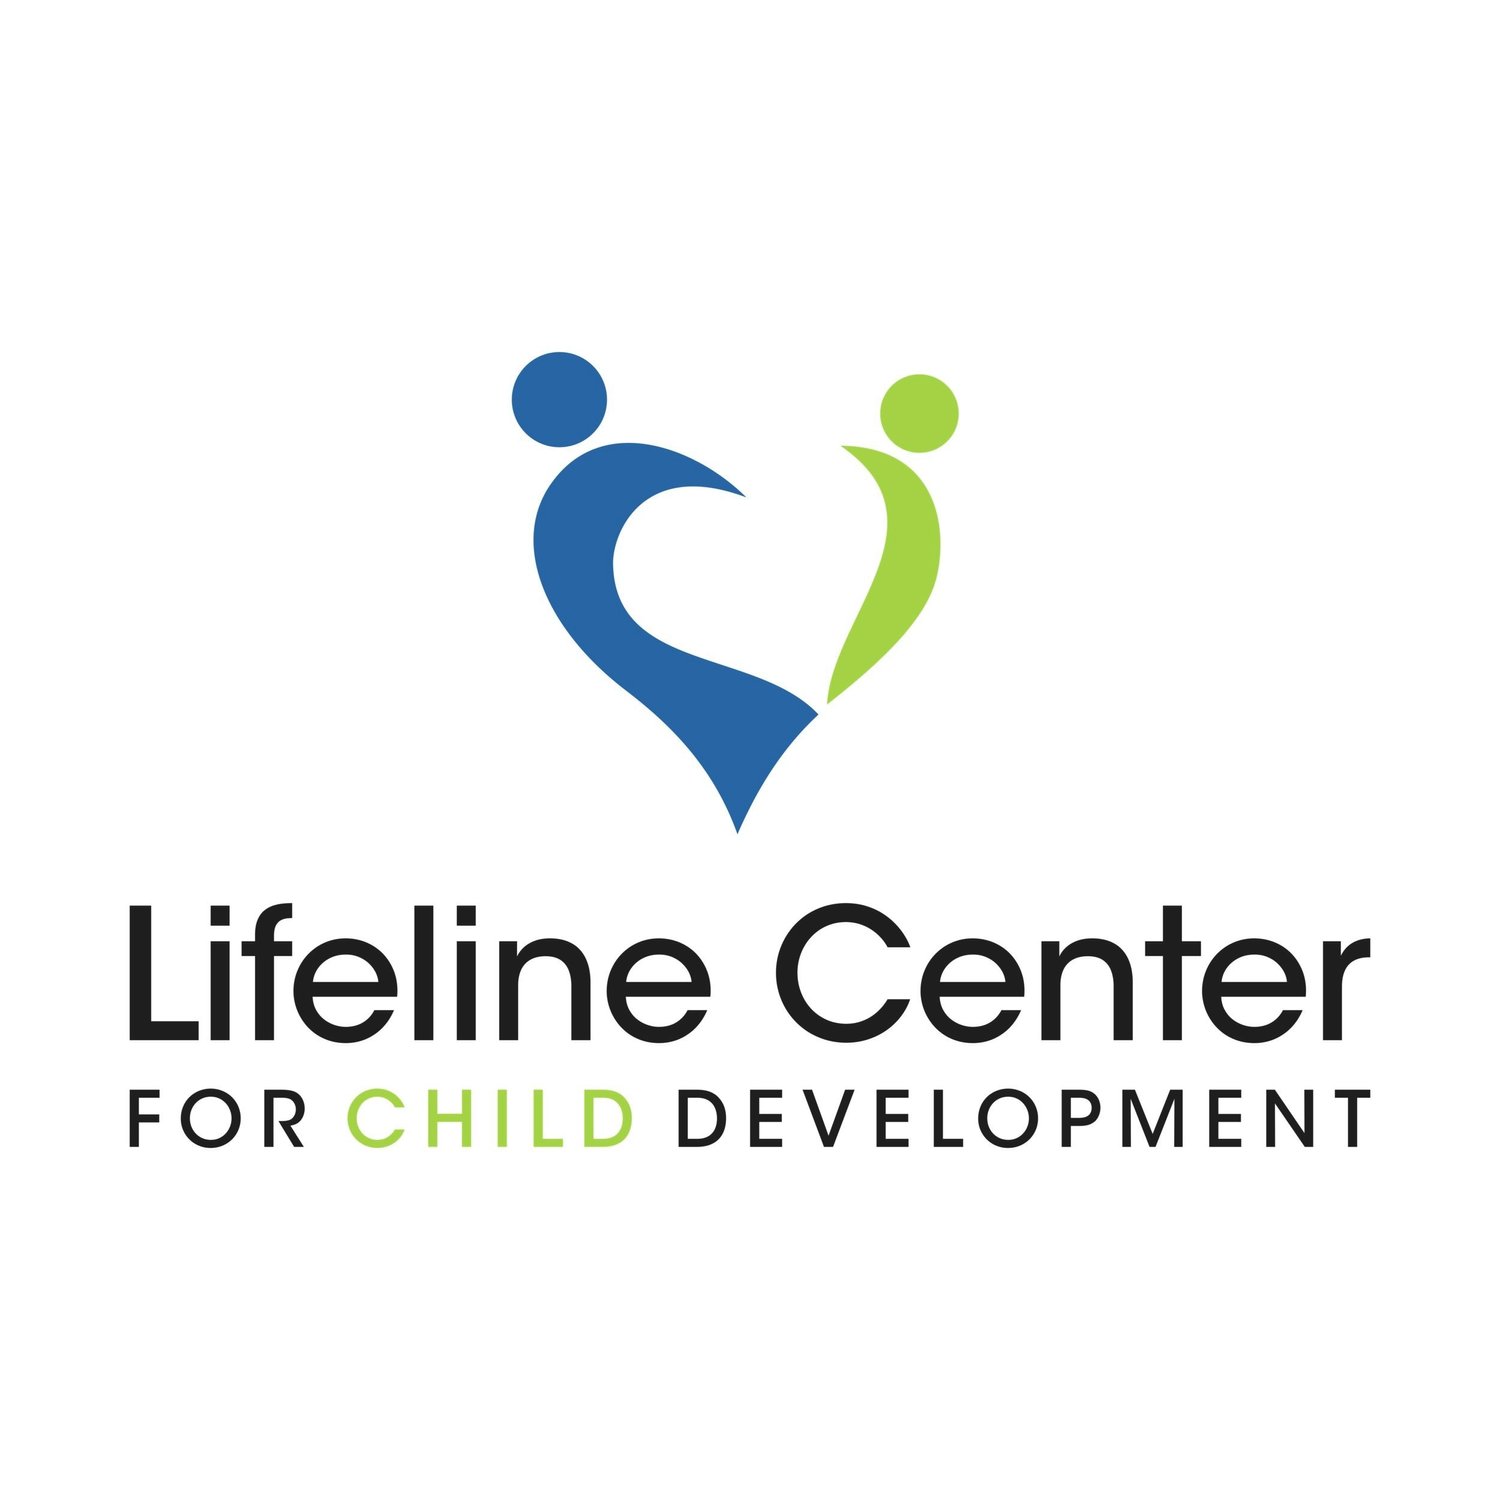 Lifeline Center For Child Development